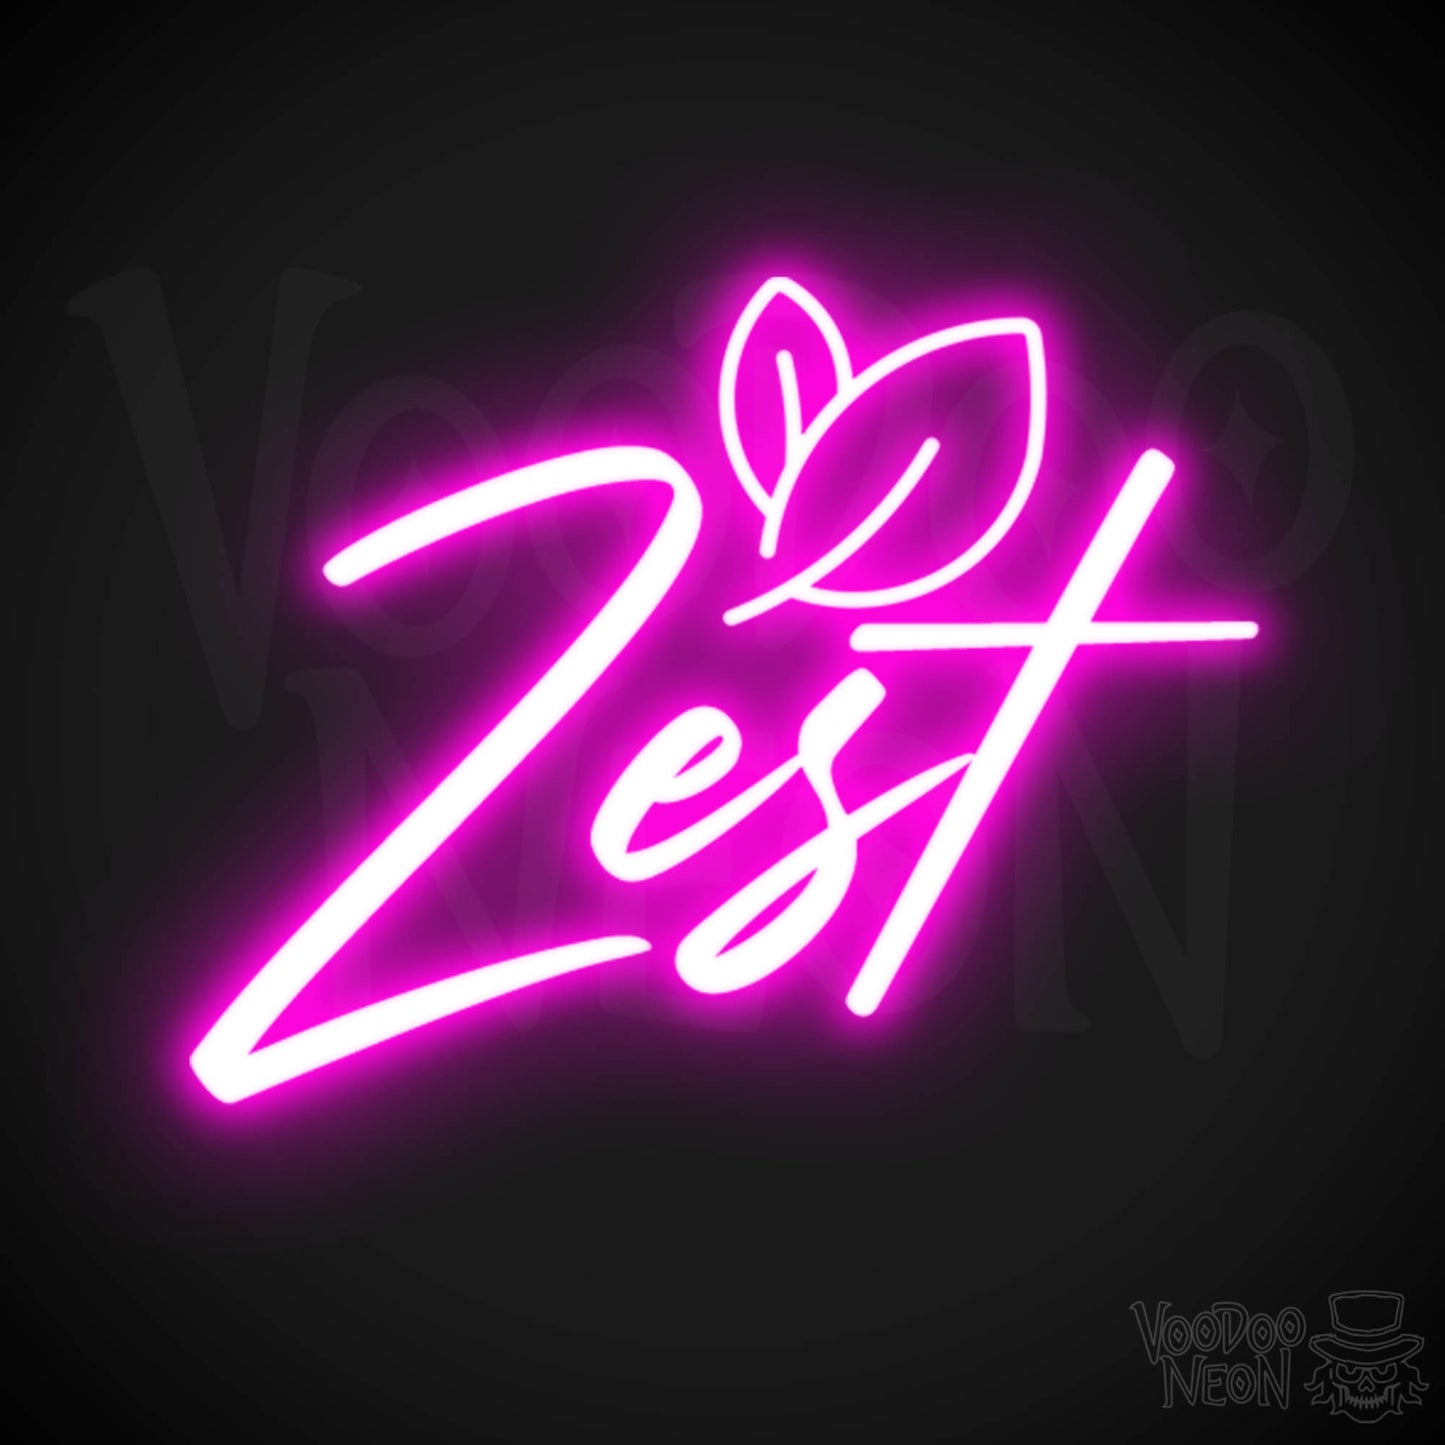 Zest Neon Sign - Neon Zest Sign - Color Pink